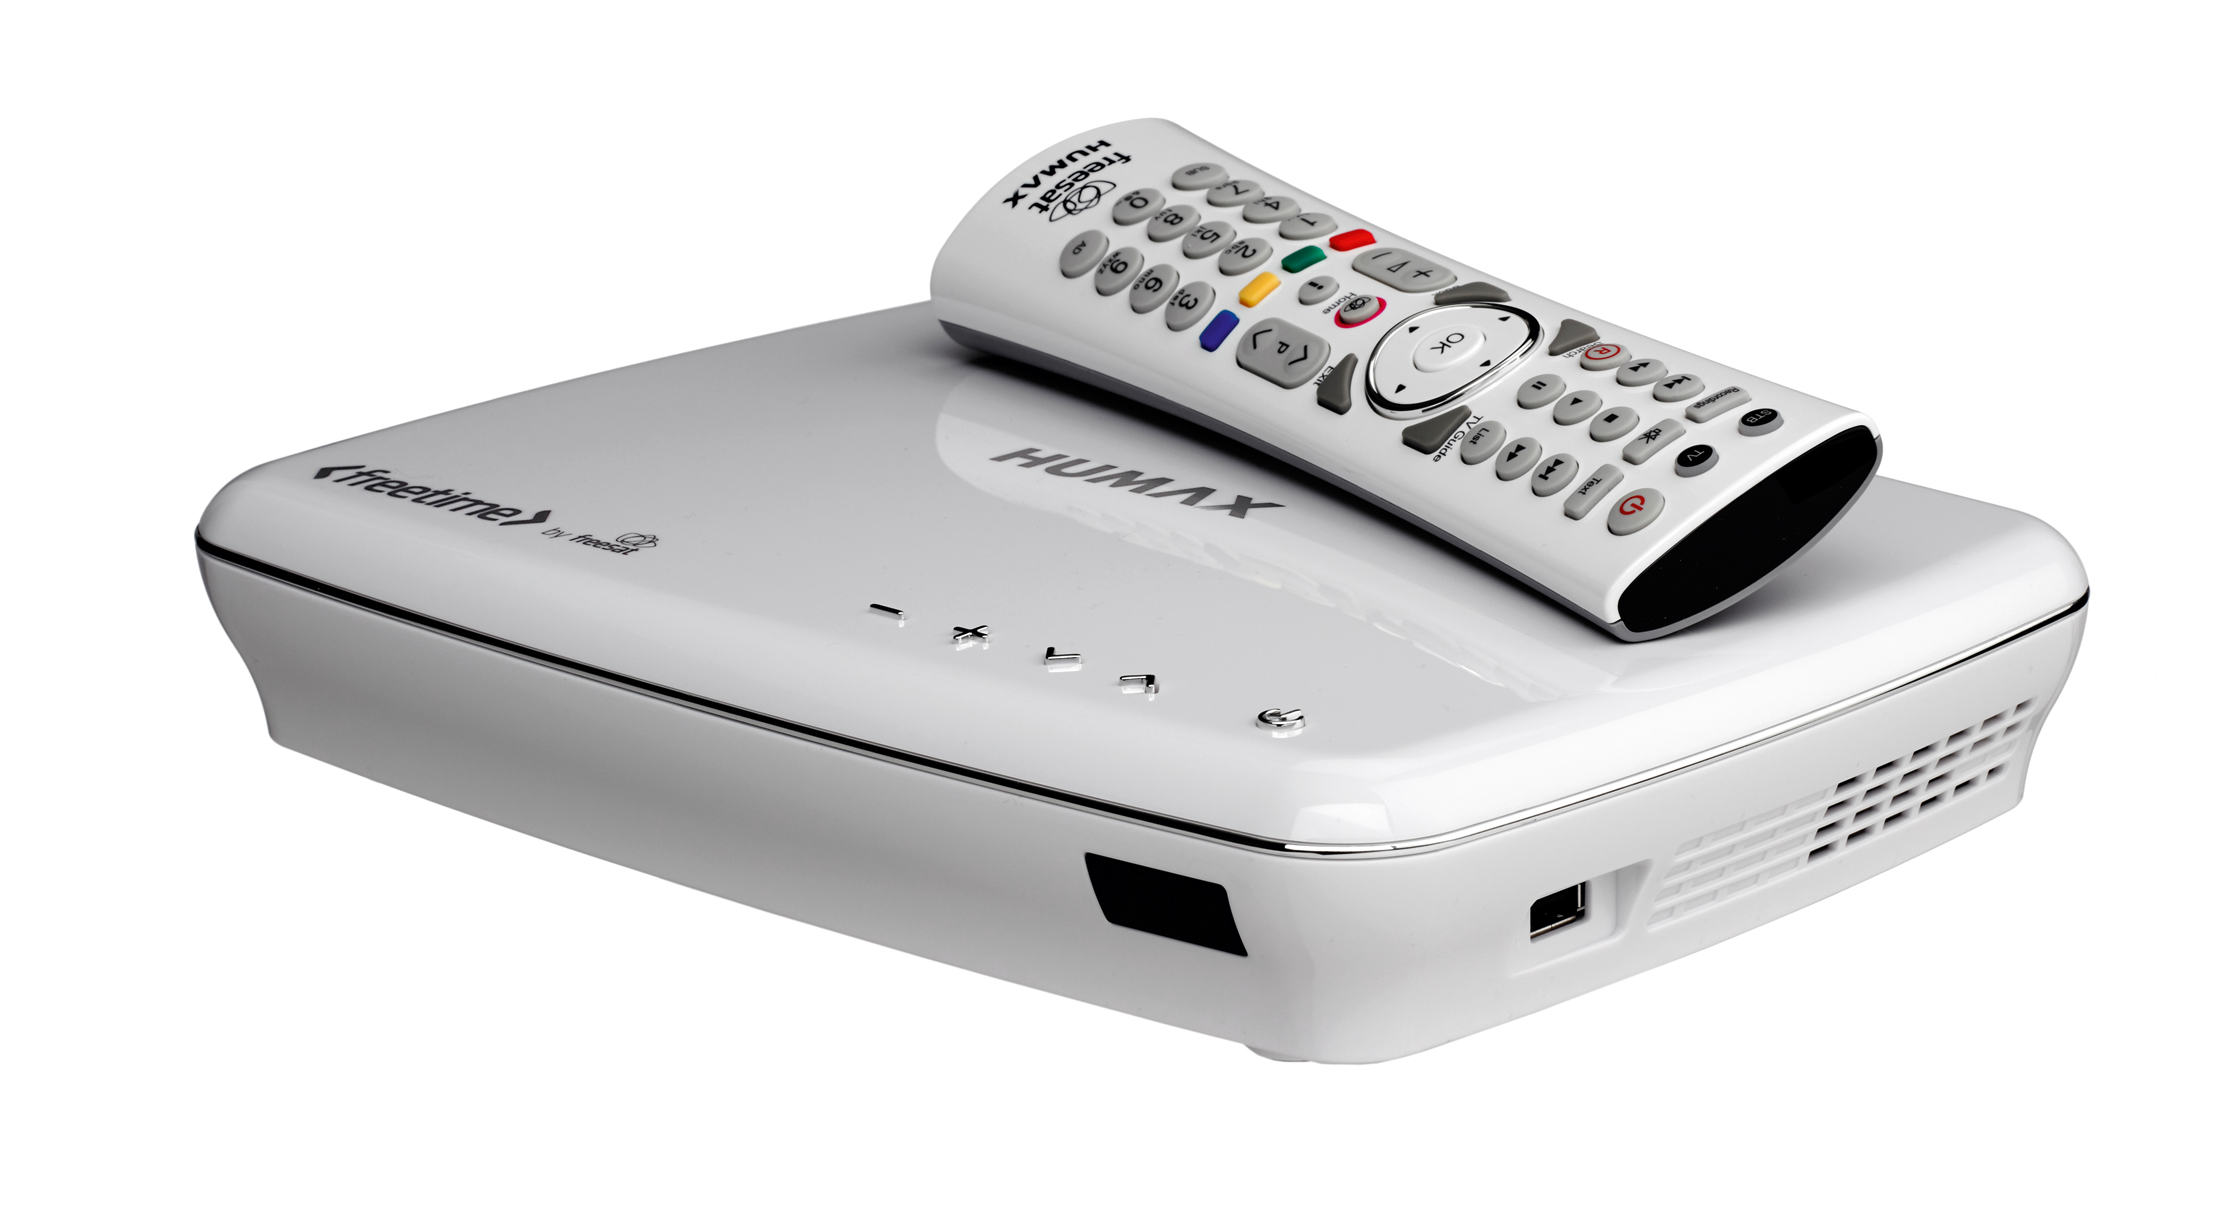 RM-seriesâ ® remoto para Humax FREESAT HD digital de HDR-1100S 500GB grabador de televisión. 